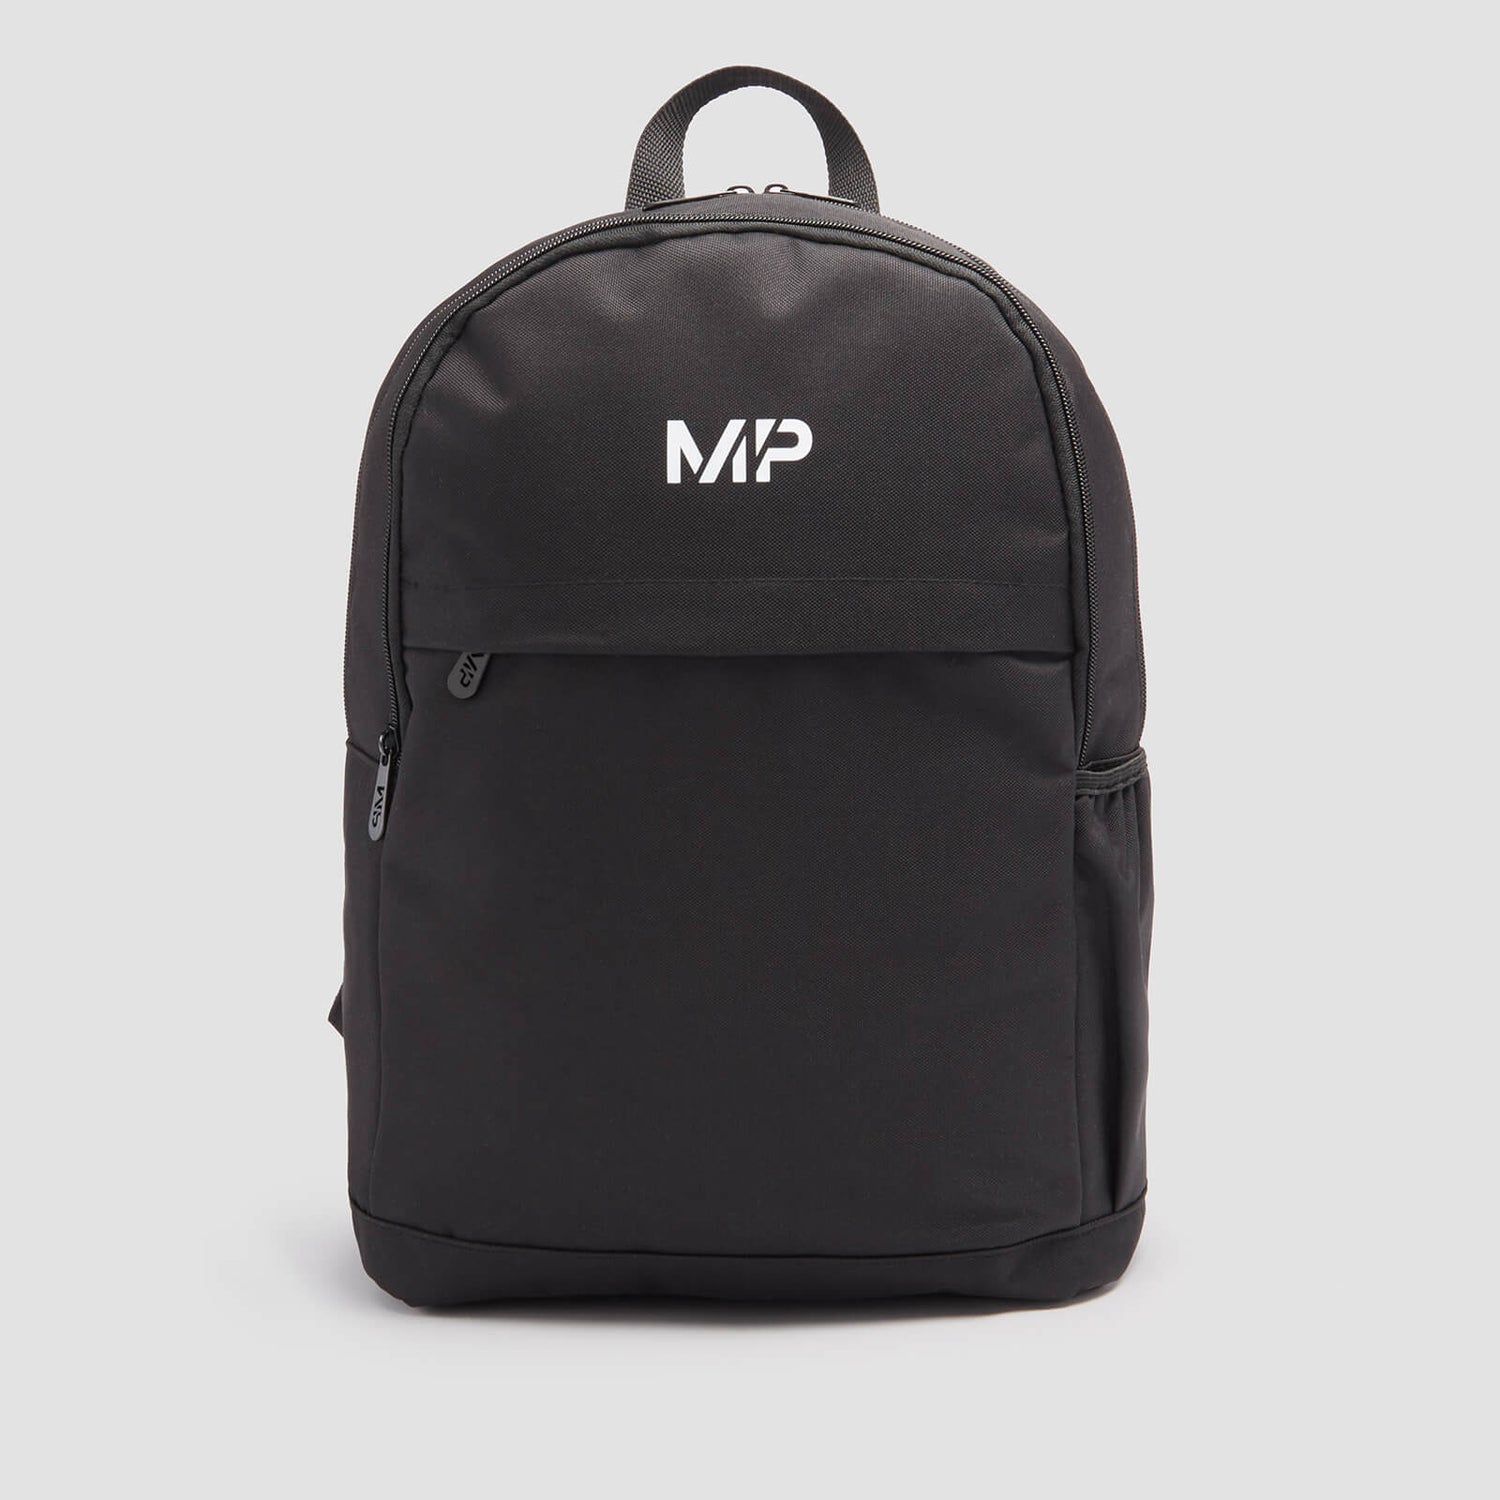 MP 백팩 - 블랙